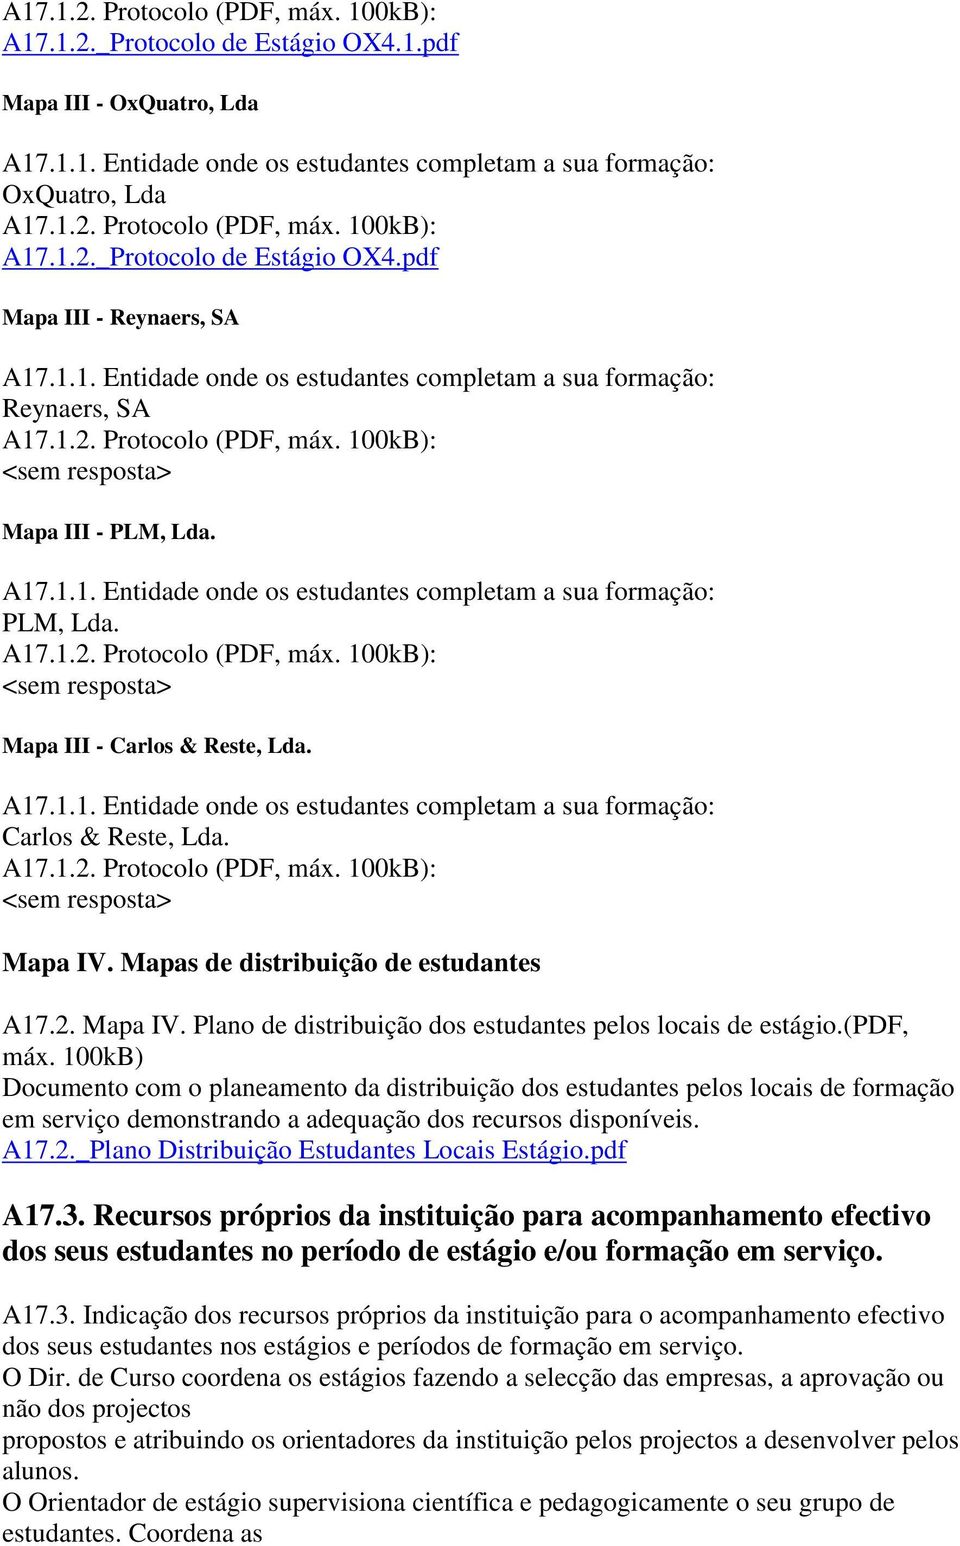 A17.1.2. Protocolo (PDF, máx. 100kB): <sem resposta> Mapa III Carlos & Reste, Lda. A17.1.1. Entidade onde os estudantes completam a sua formação: Carlos & Reste, Lda. A17.1.2. Protocolo (PDF, máx. 100kB): <sem resposta> Mapa IV.